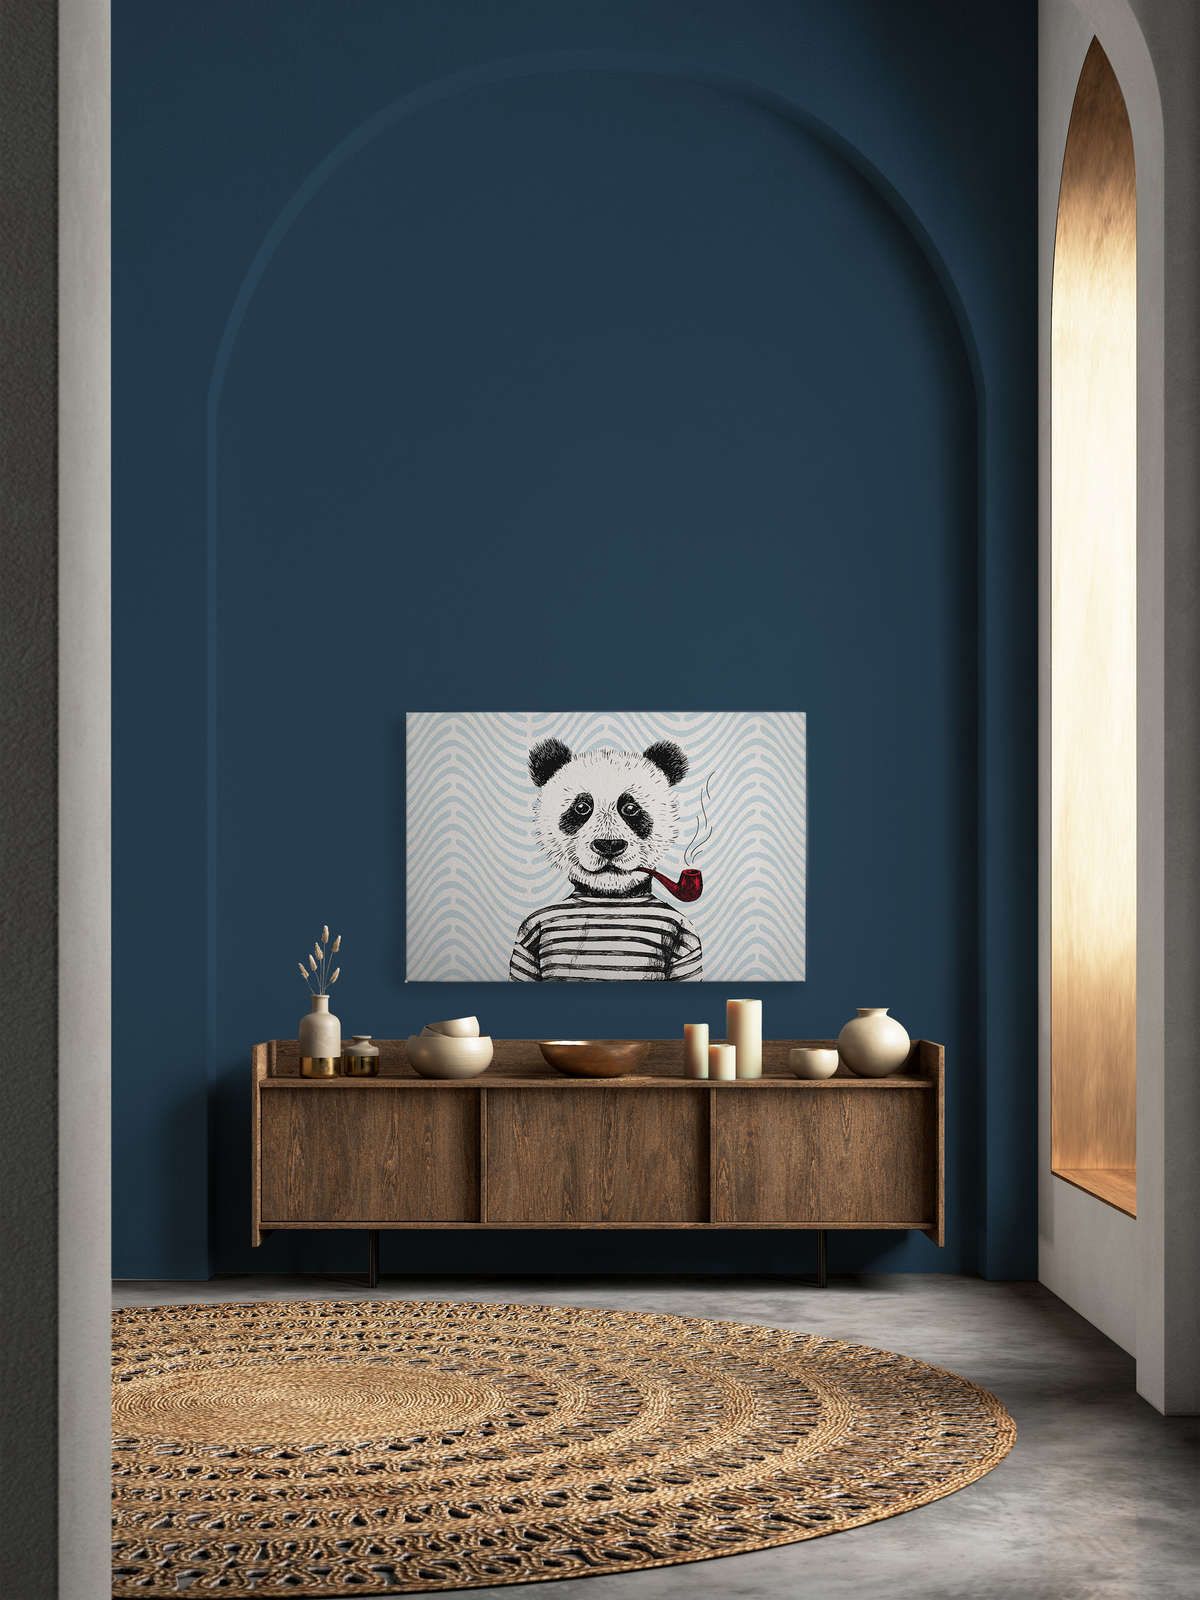             Tableau sur toile Style BD pour chambre d'enfant motif panda - 1,20 m x 0,80 m
        